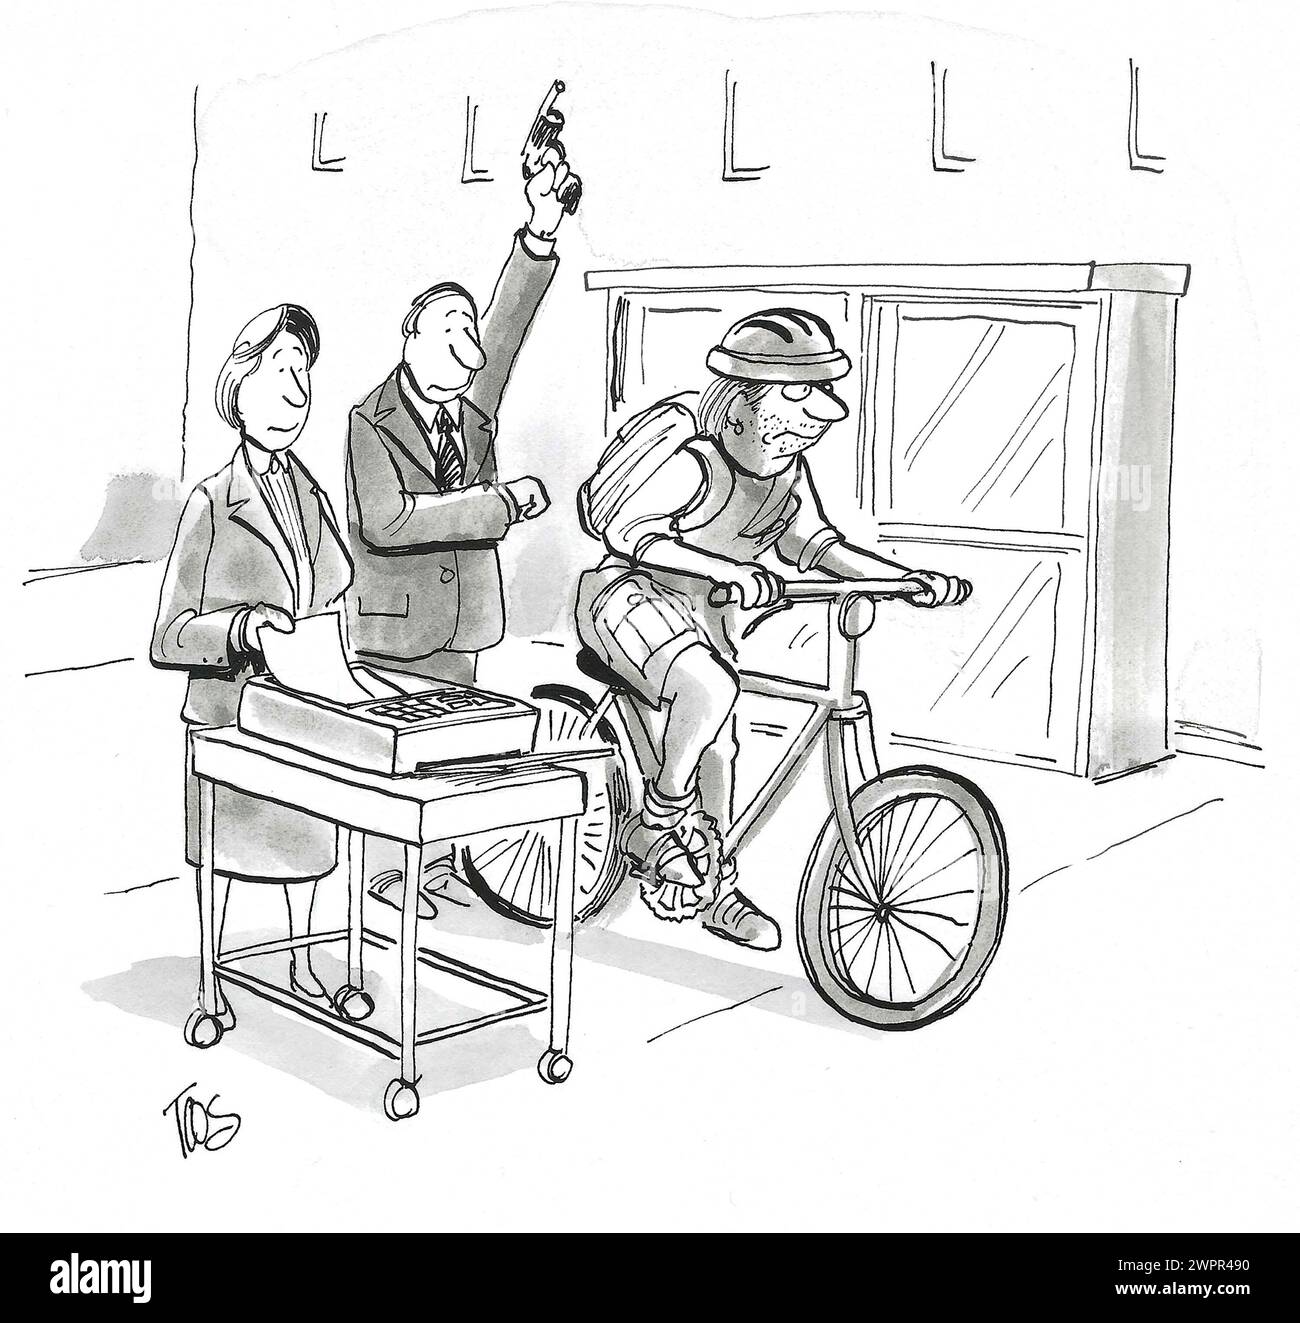 BW-Zeichentrickfilm, über den es schneller geht - Fahrrad oder Faxgerät. Stockfoto